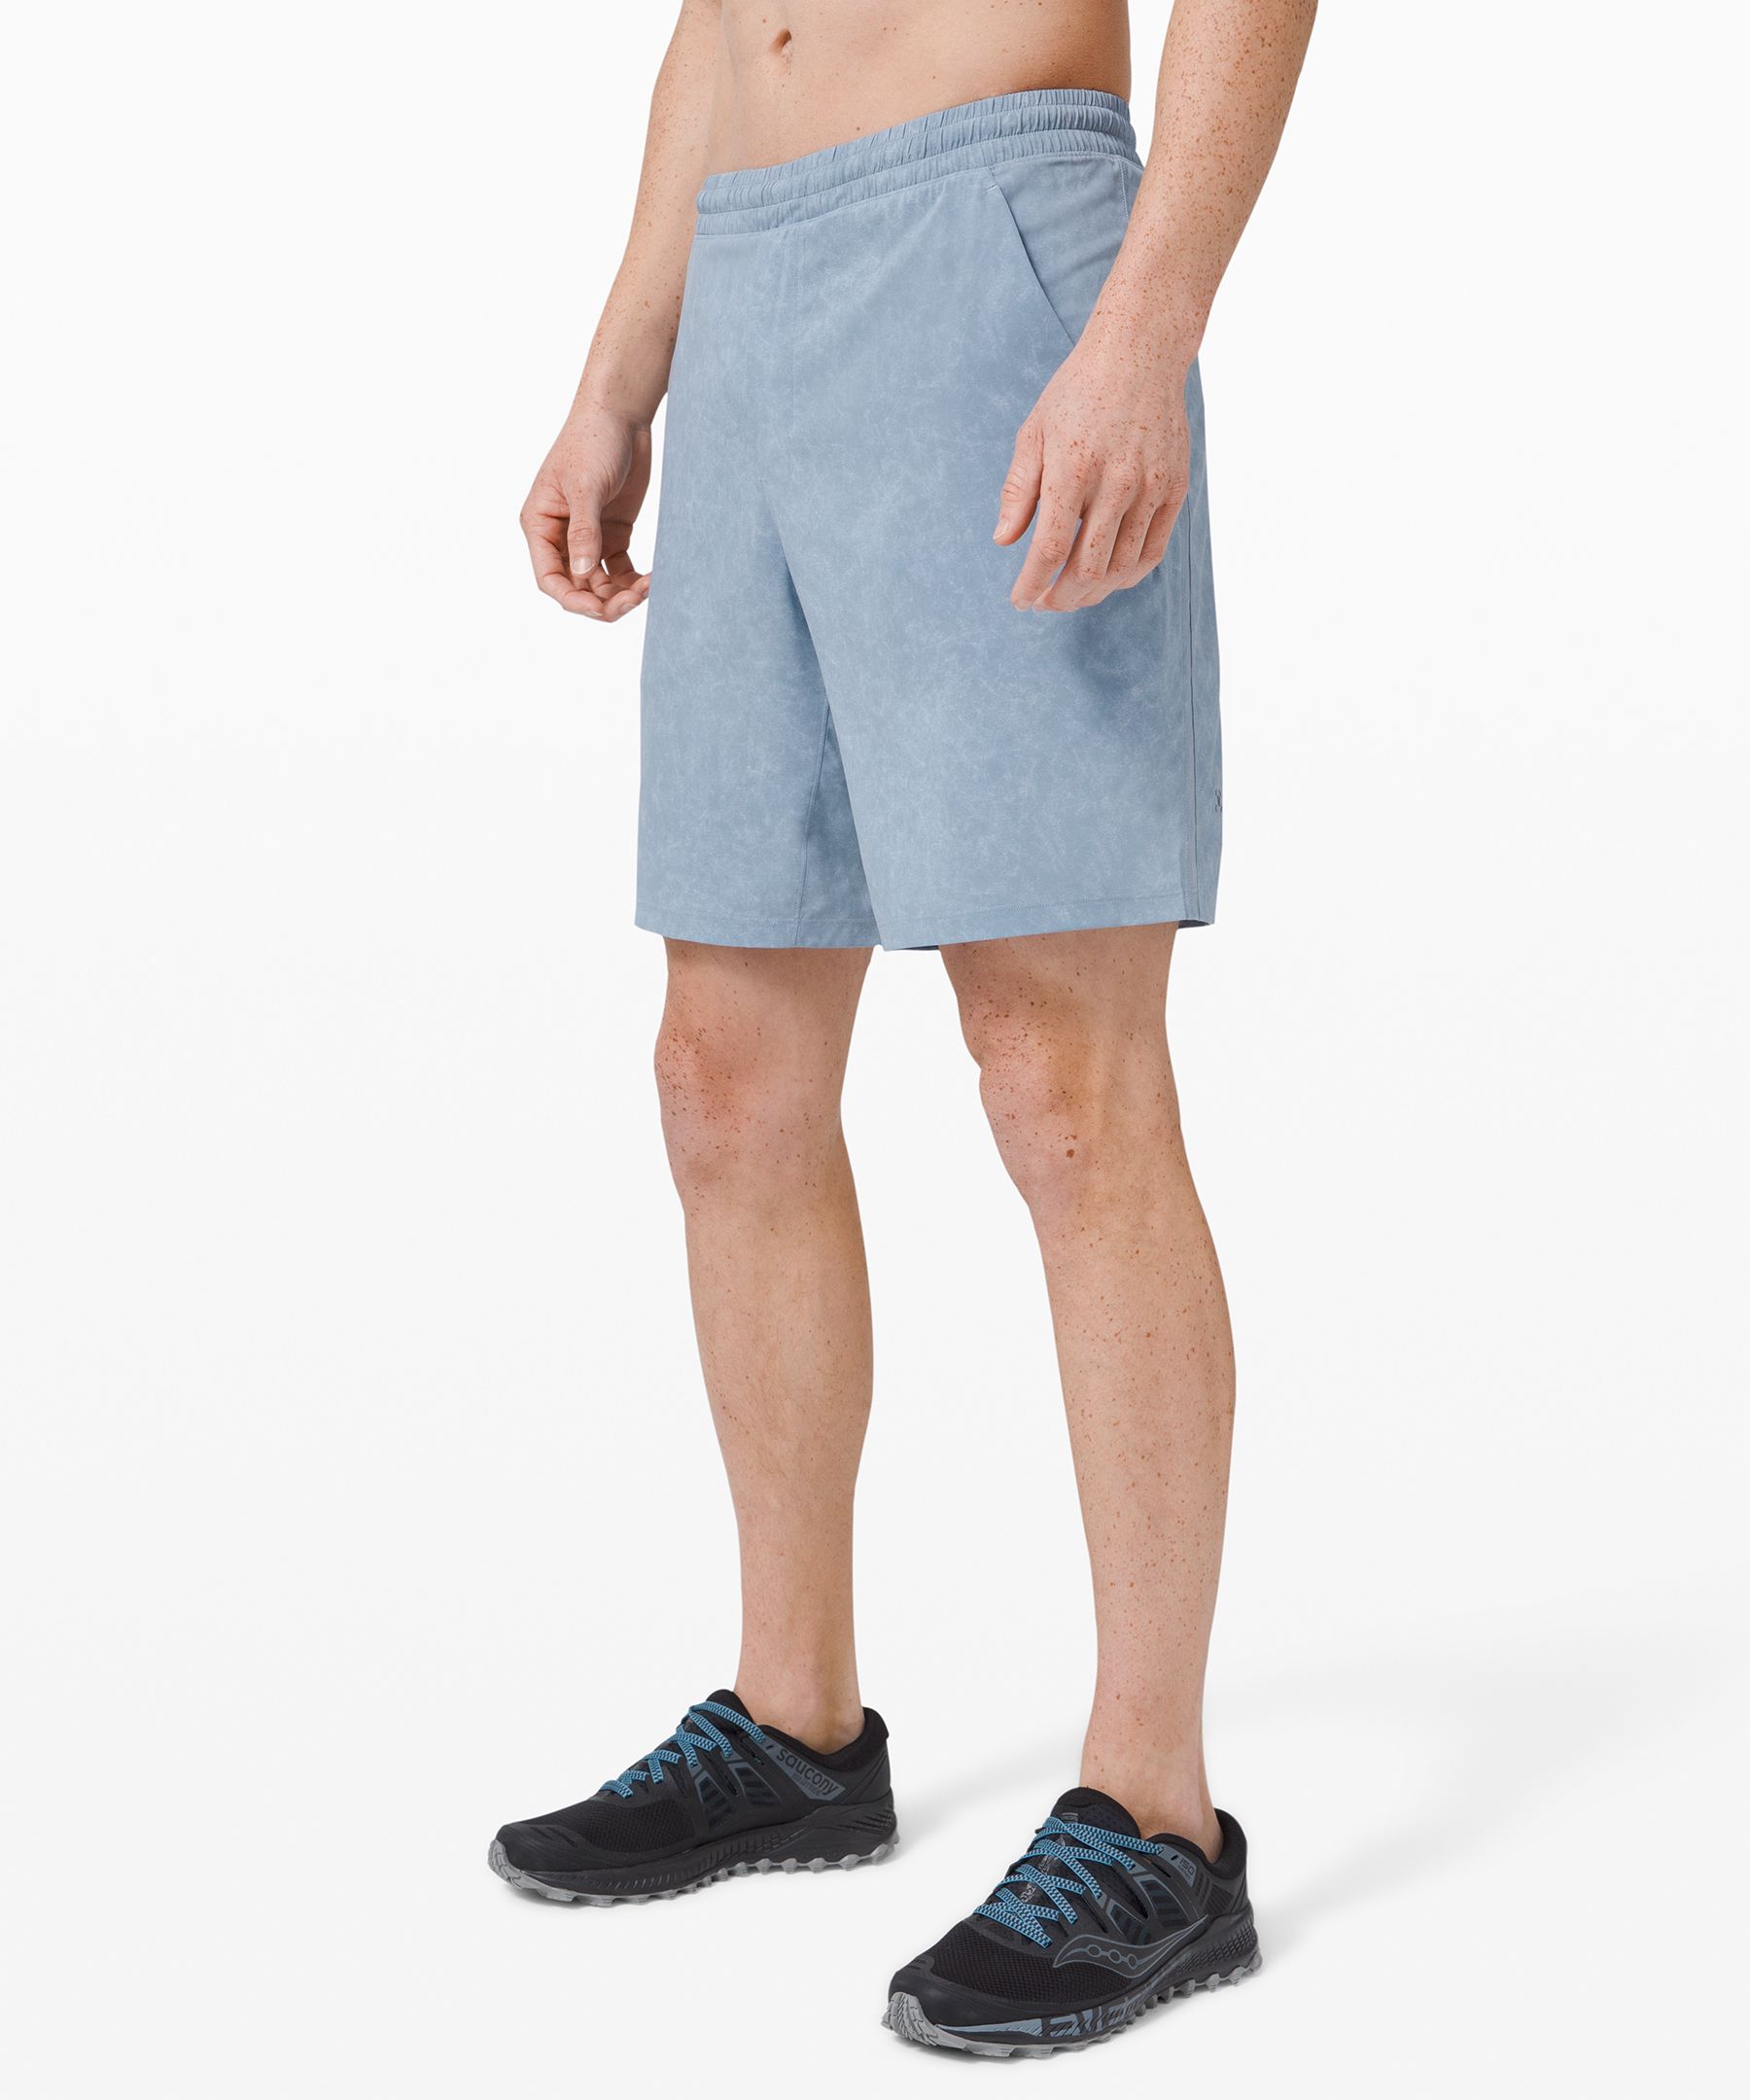 lululemon shorts blue